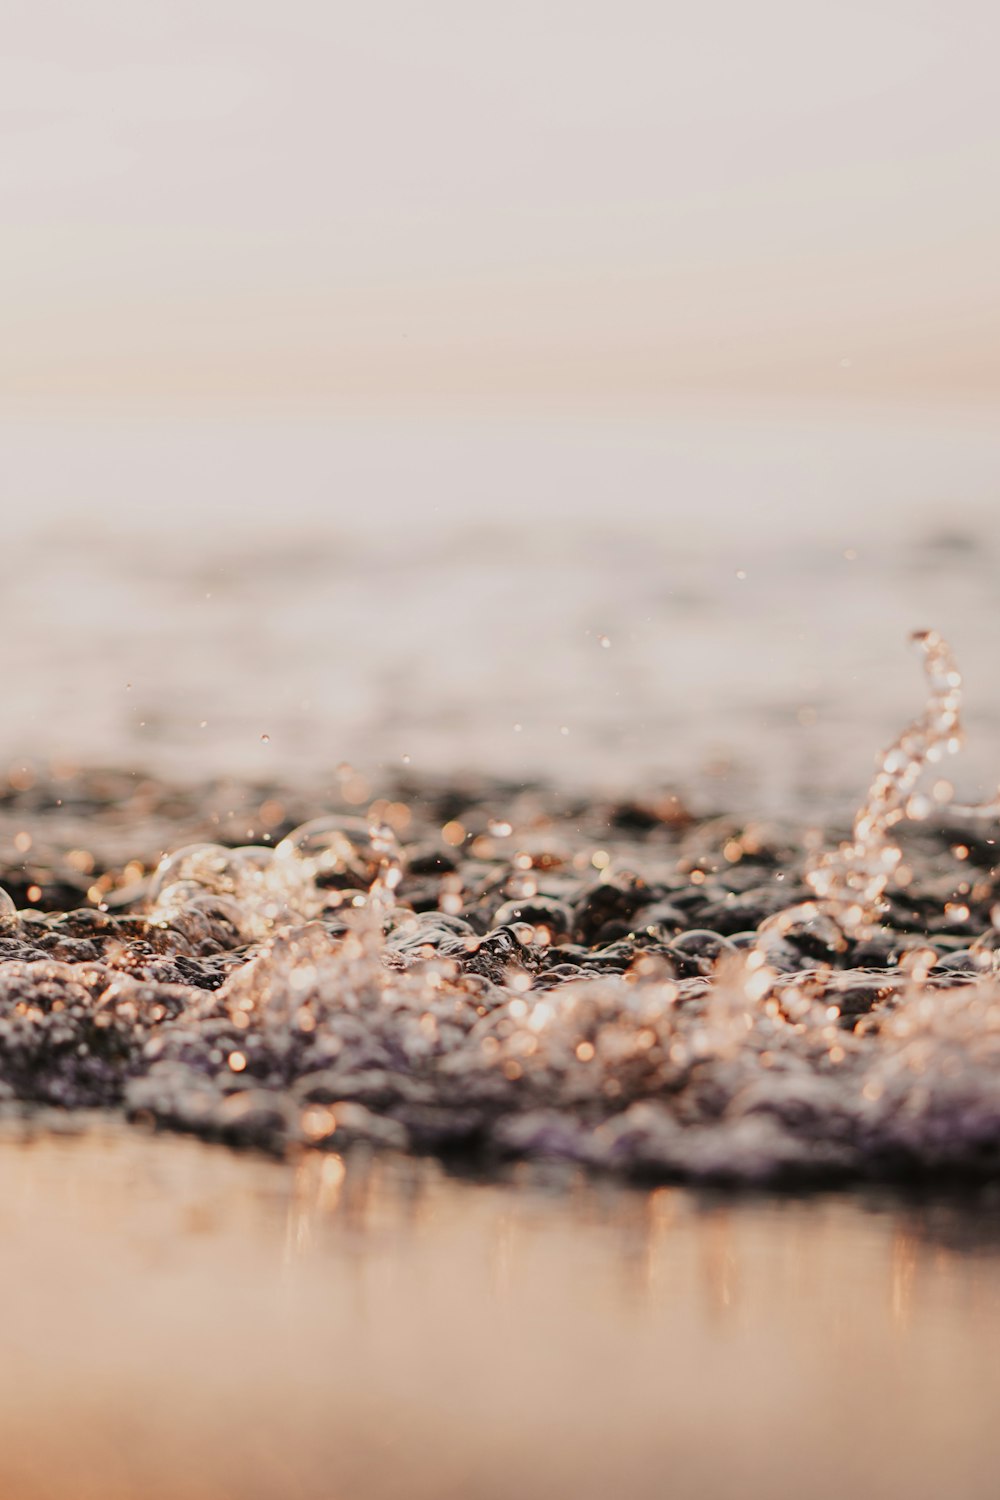 water splash on brown sand during daytime